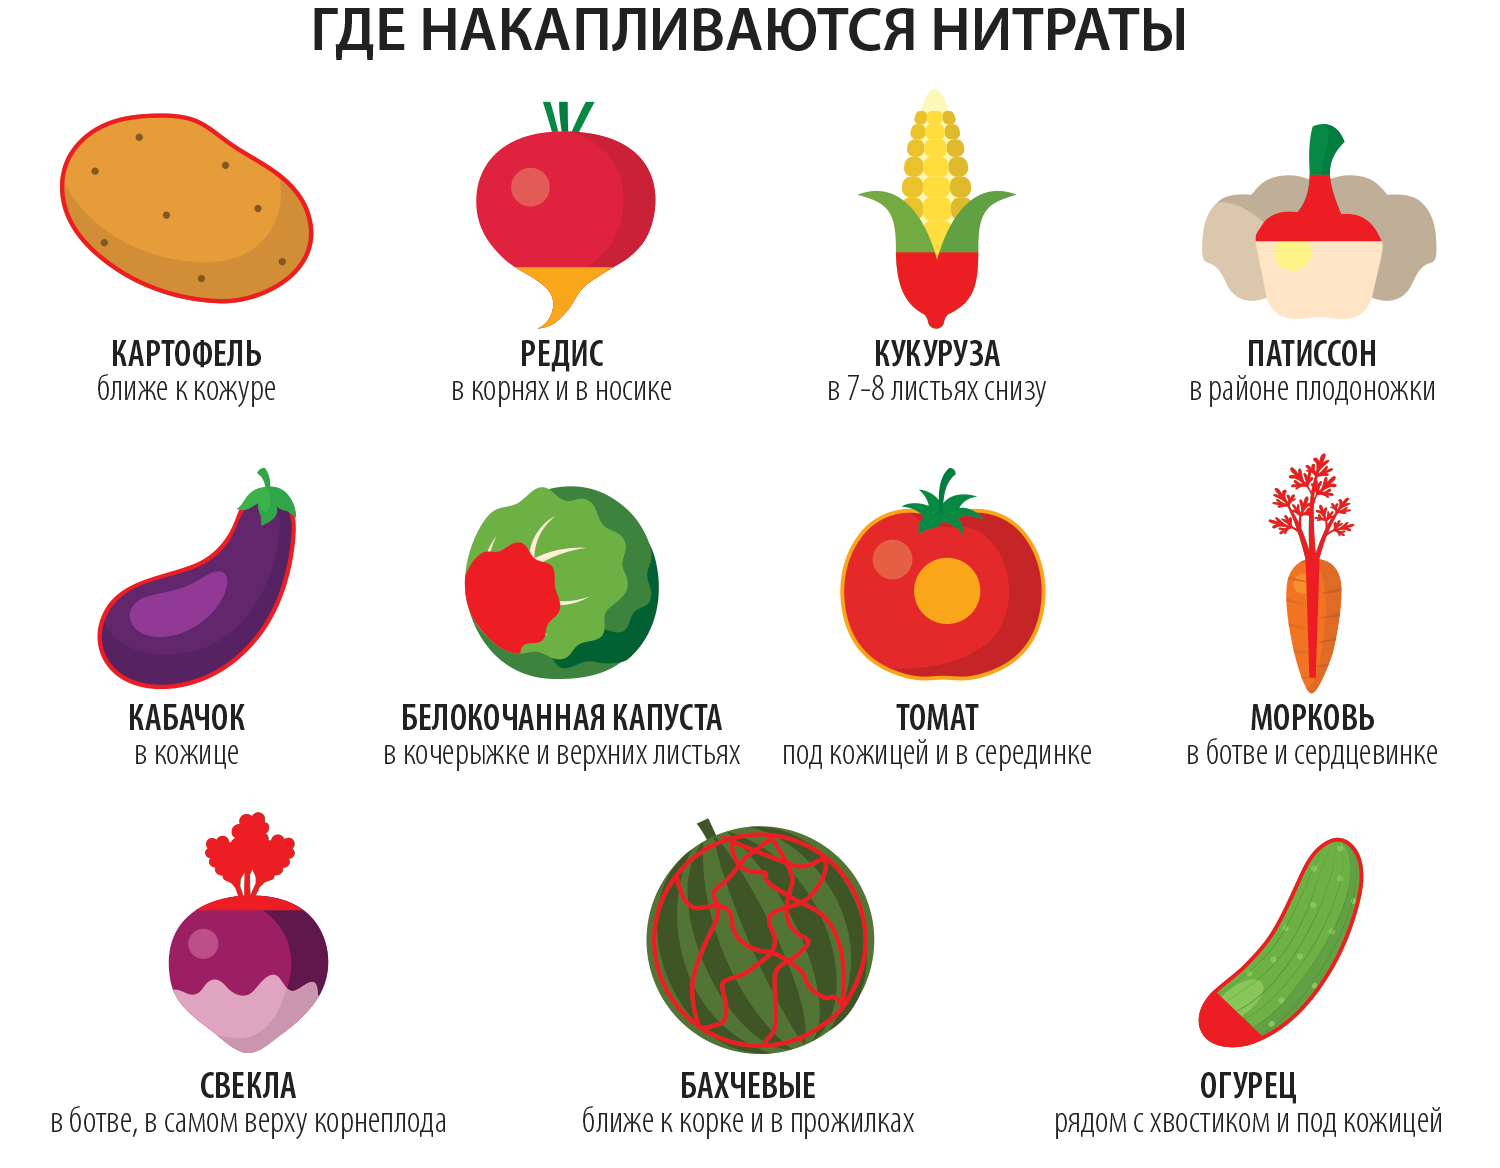 Нажмите на фрукт. Нитраты в овощах. Нитриты в овощах и фруктах. Нитраты во фруктах. Нитраты и нитриты в овощах и фруктах.